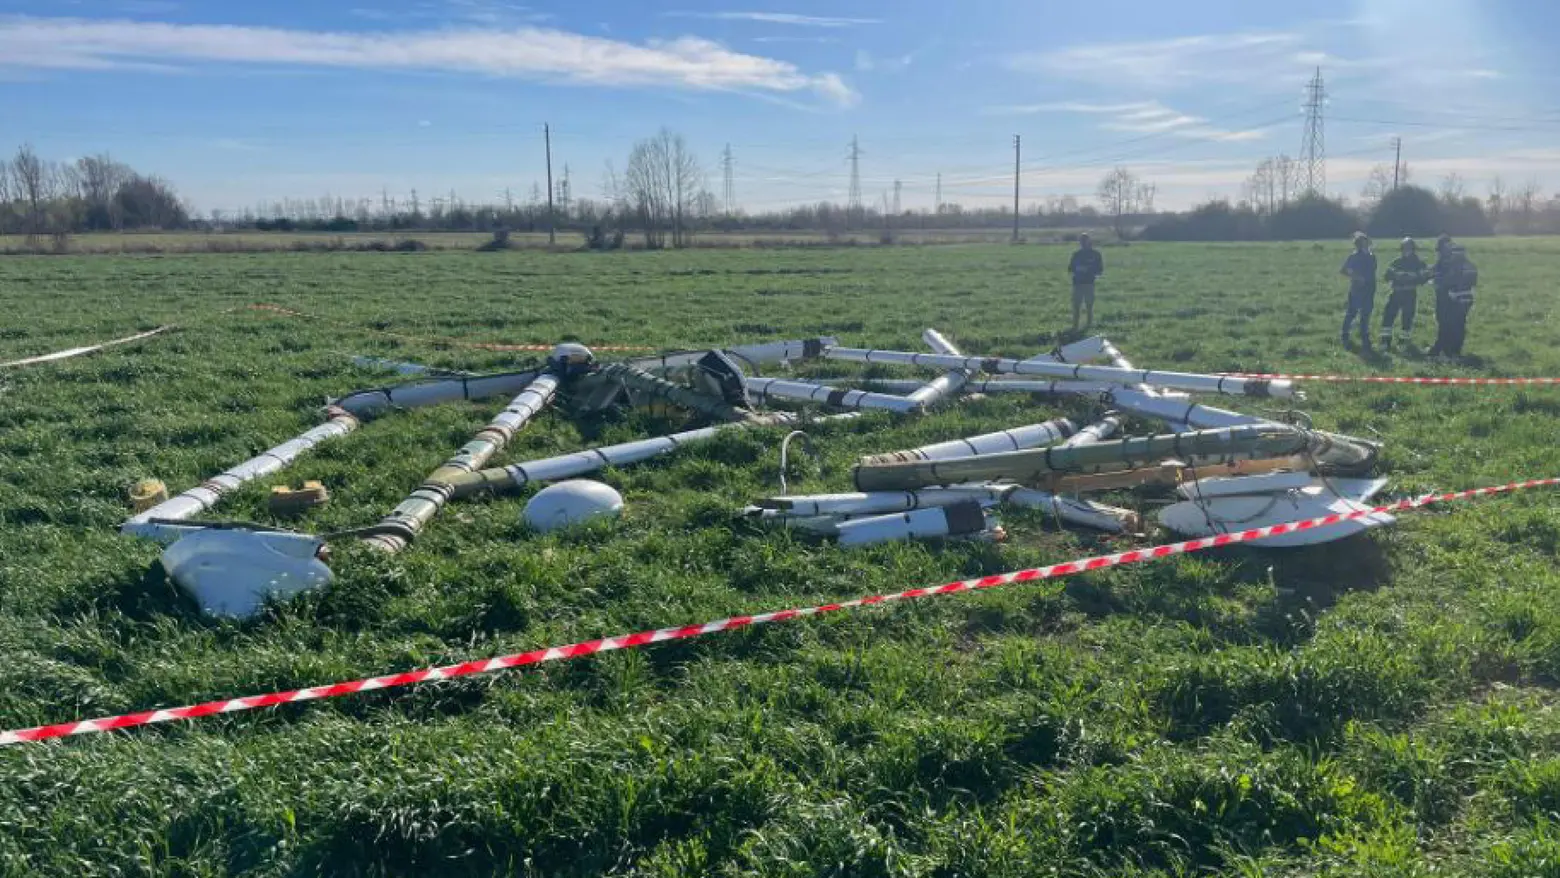 L'enorme antenna per la ricerca disorgenti caduta da un elicottero a Brescia